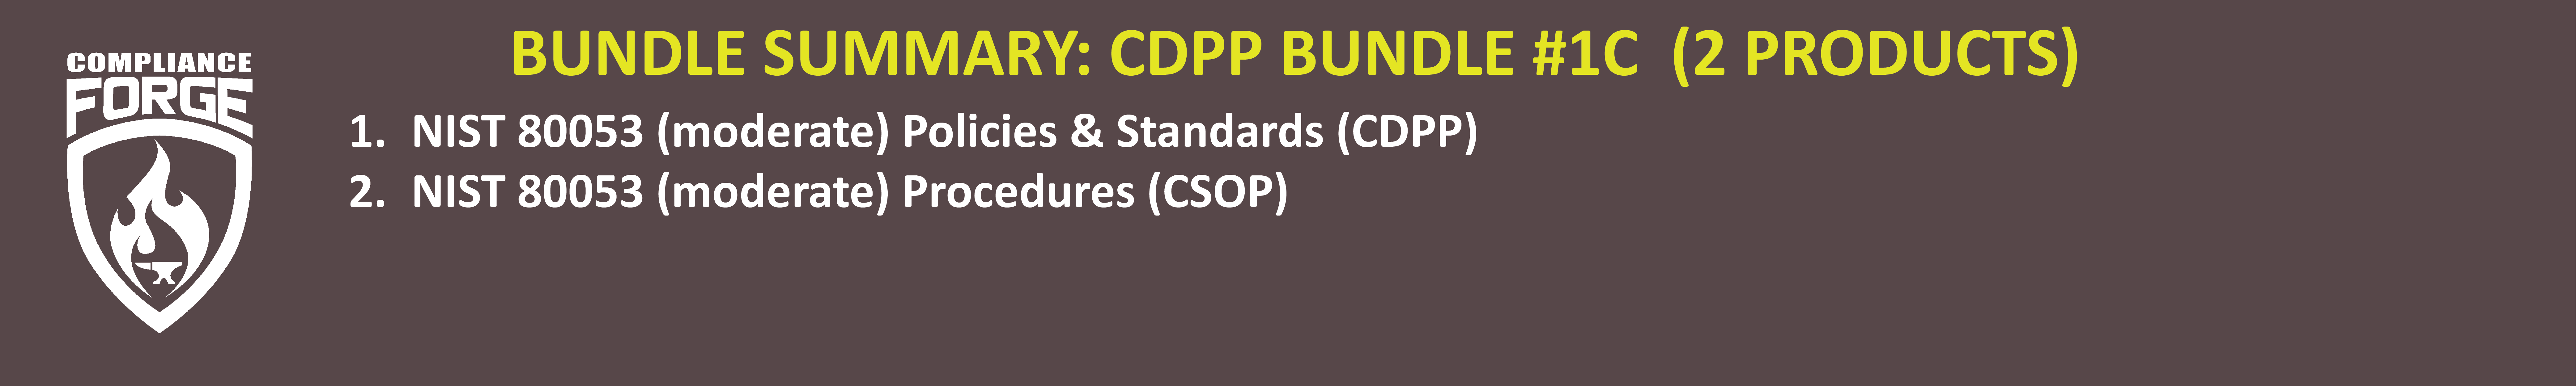 nist 800-53 r5 policies standards procedures template